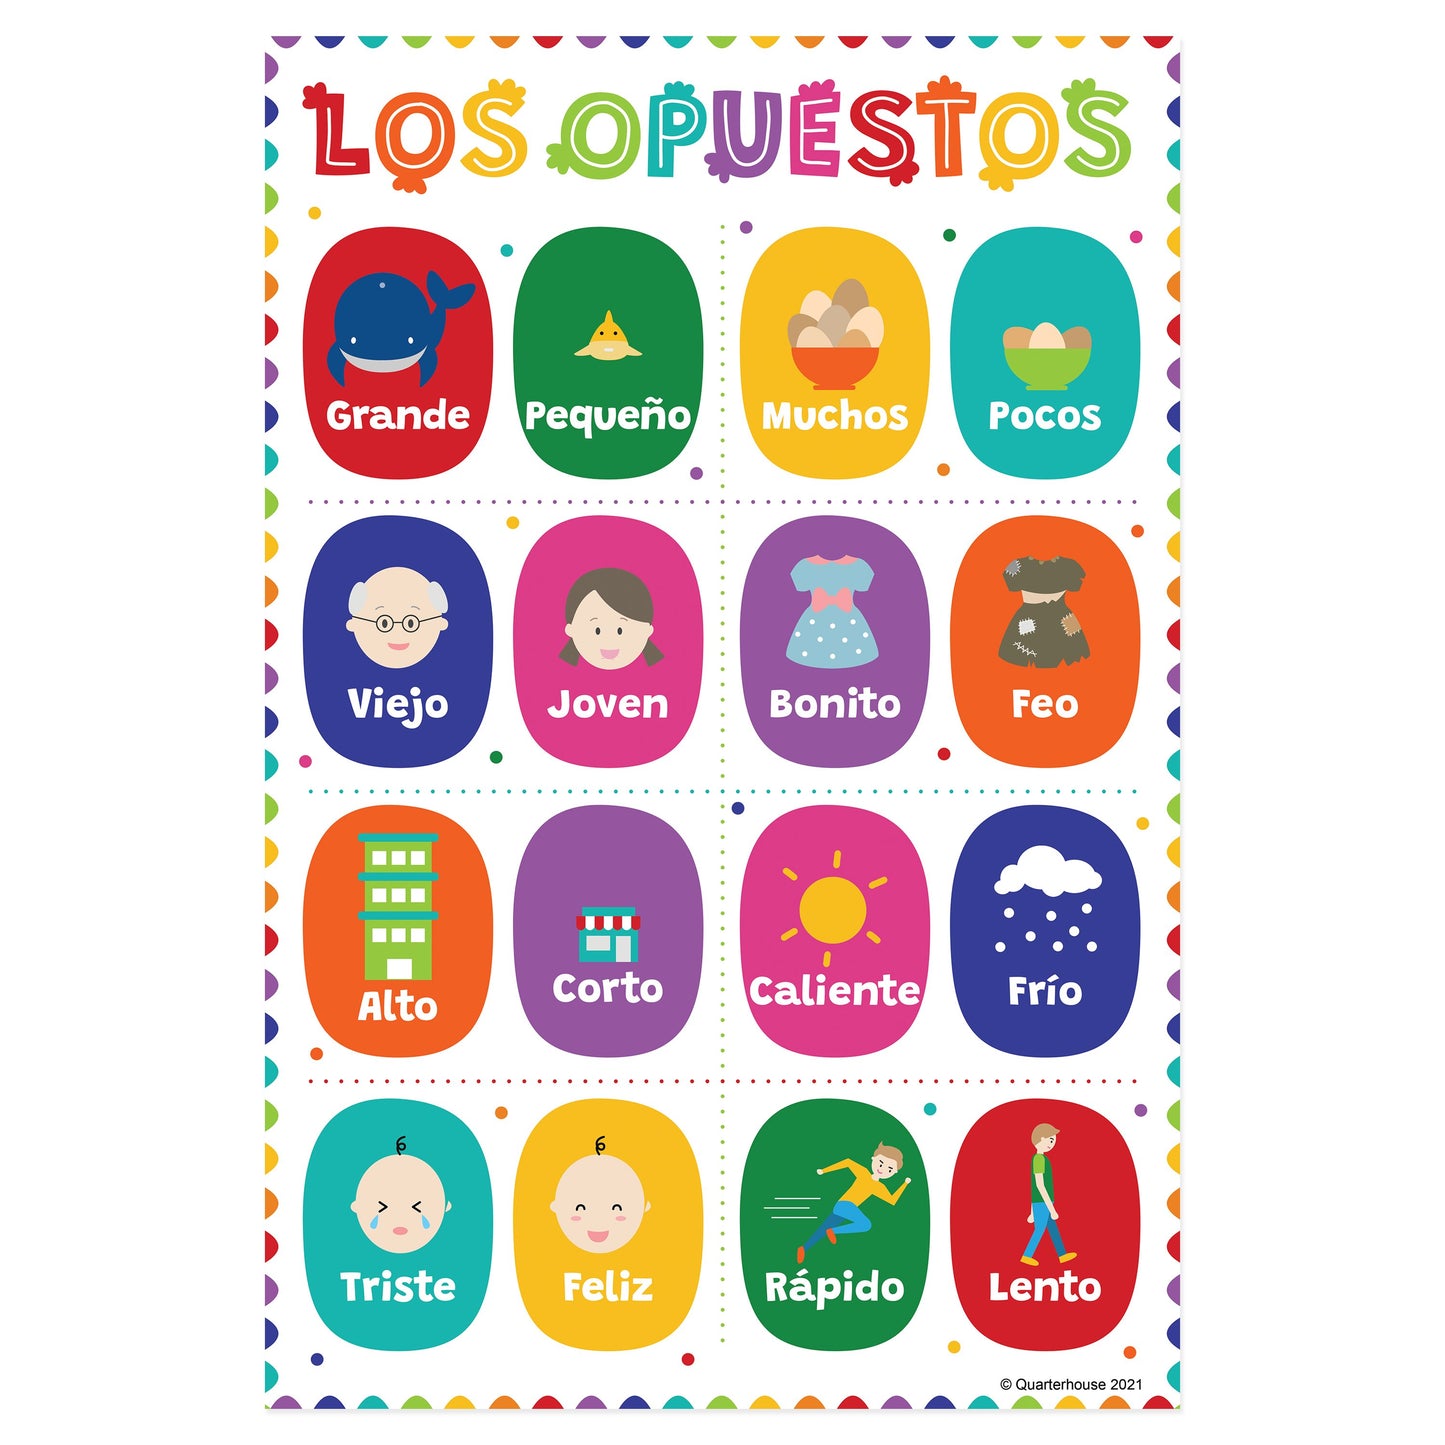 Quarterhouse Beginner Spanish - Opposites Poster, Spanish and ESL Classroom Materials for Teachers